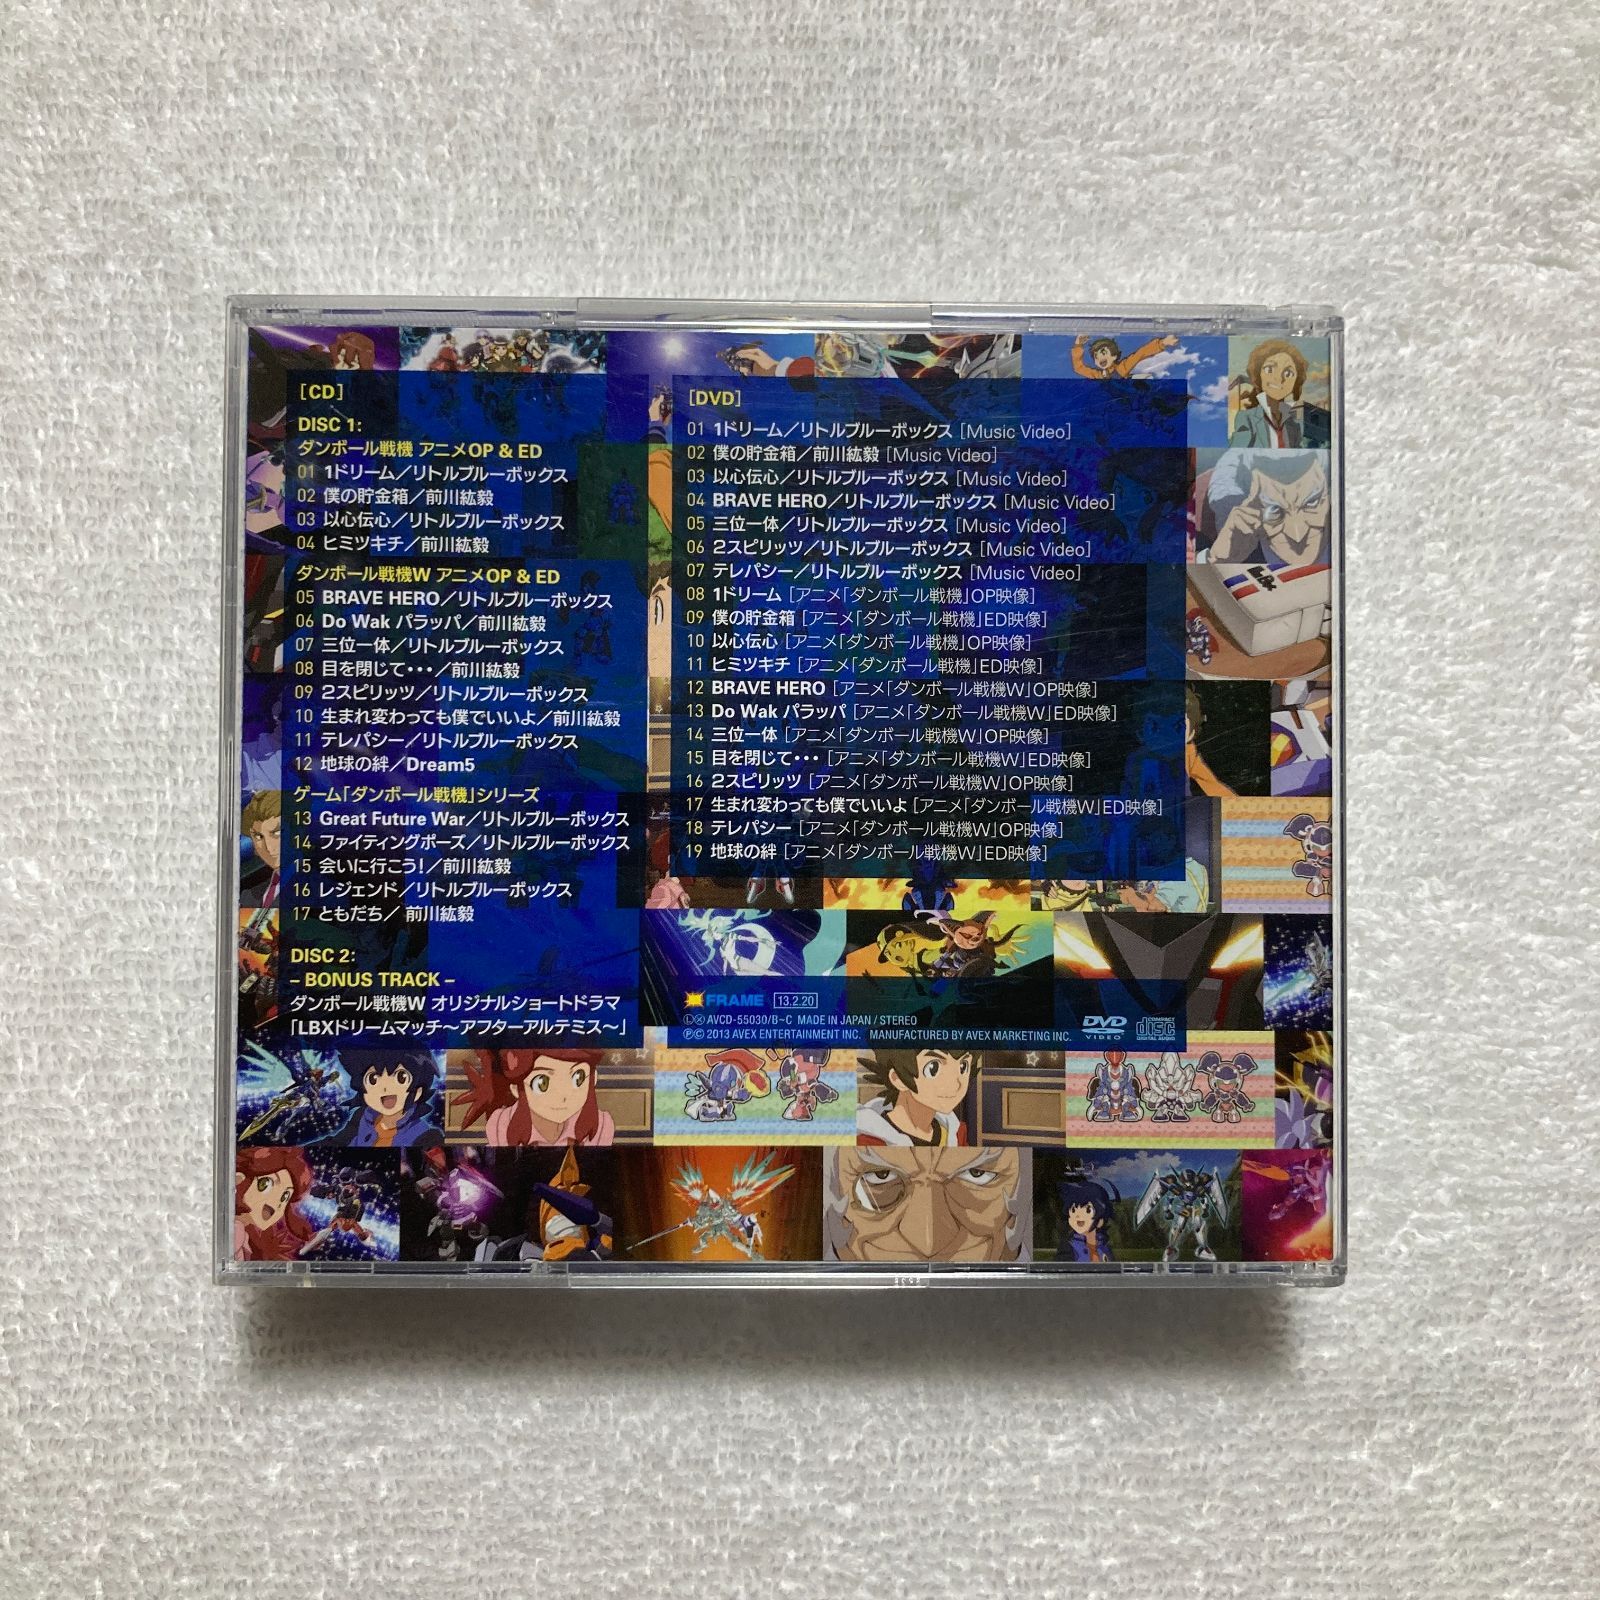 【CD】リトルブルーボックス,前川紘毅,Dream5 / ダンボール戦機コンプリートソングブック (初回生産限定) (CD2枚+DVD) − AVCD-55030/B-C